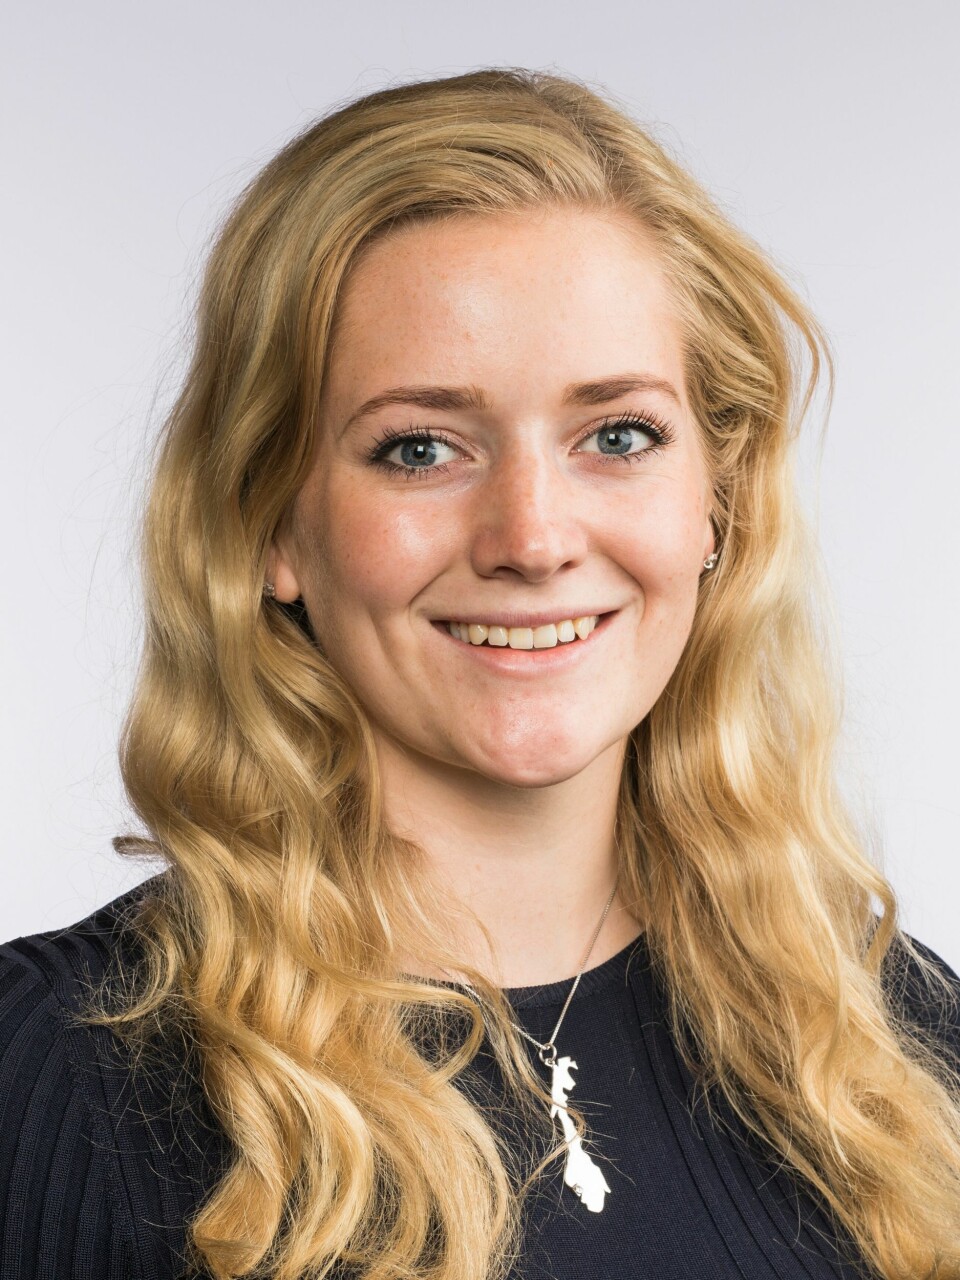 ÅPEN OG RYDDIG: Stortingsrepresentant Emilie Enger Mehl (Sp) fra Hedmark er opptatt av en åpen og ryddig prosess.